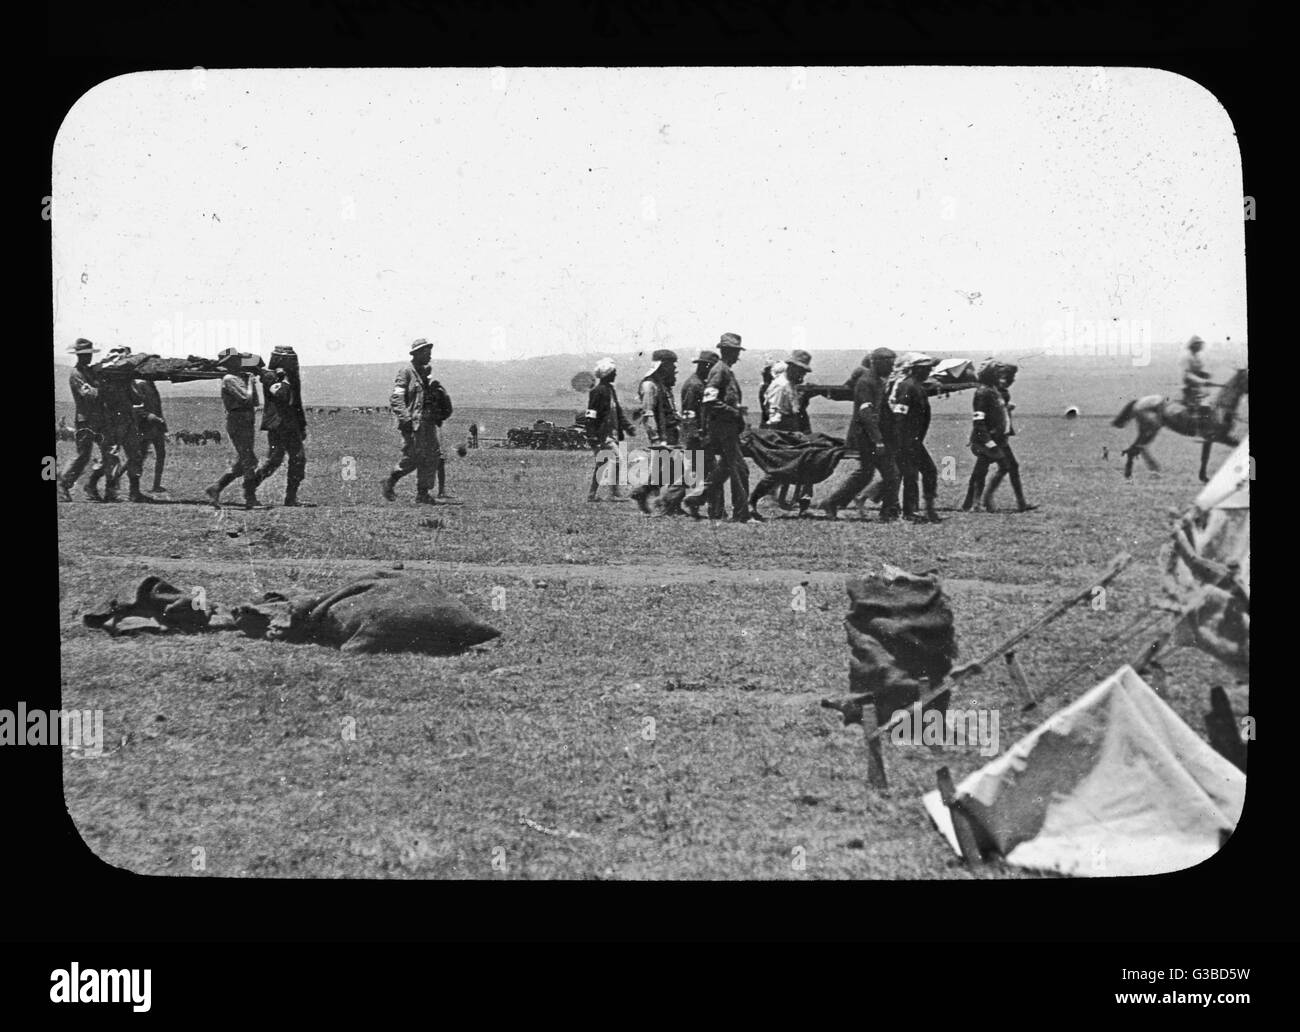 A COLENSO, Buller fa un coraggioso attacco alla posizione di Boer ma è costretto al ritiro con pesanti perdite : Nativi barella portatori di trasportare feriti dopo la battaglia data: 15-16 Dicembre 1899 Foto Stock